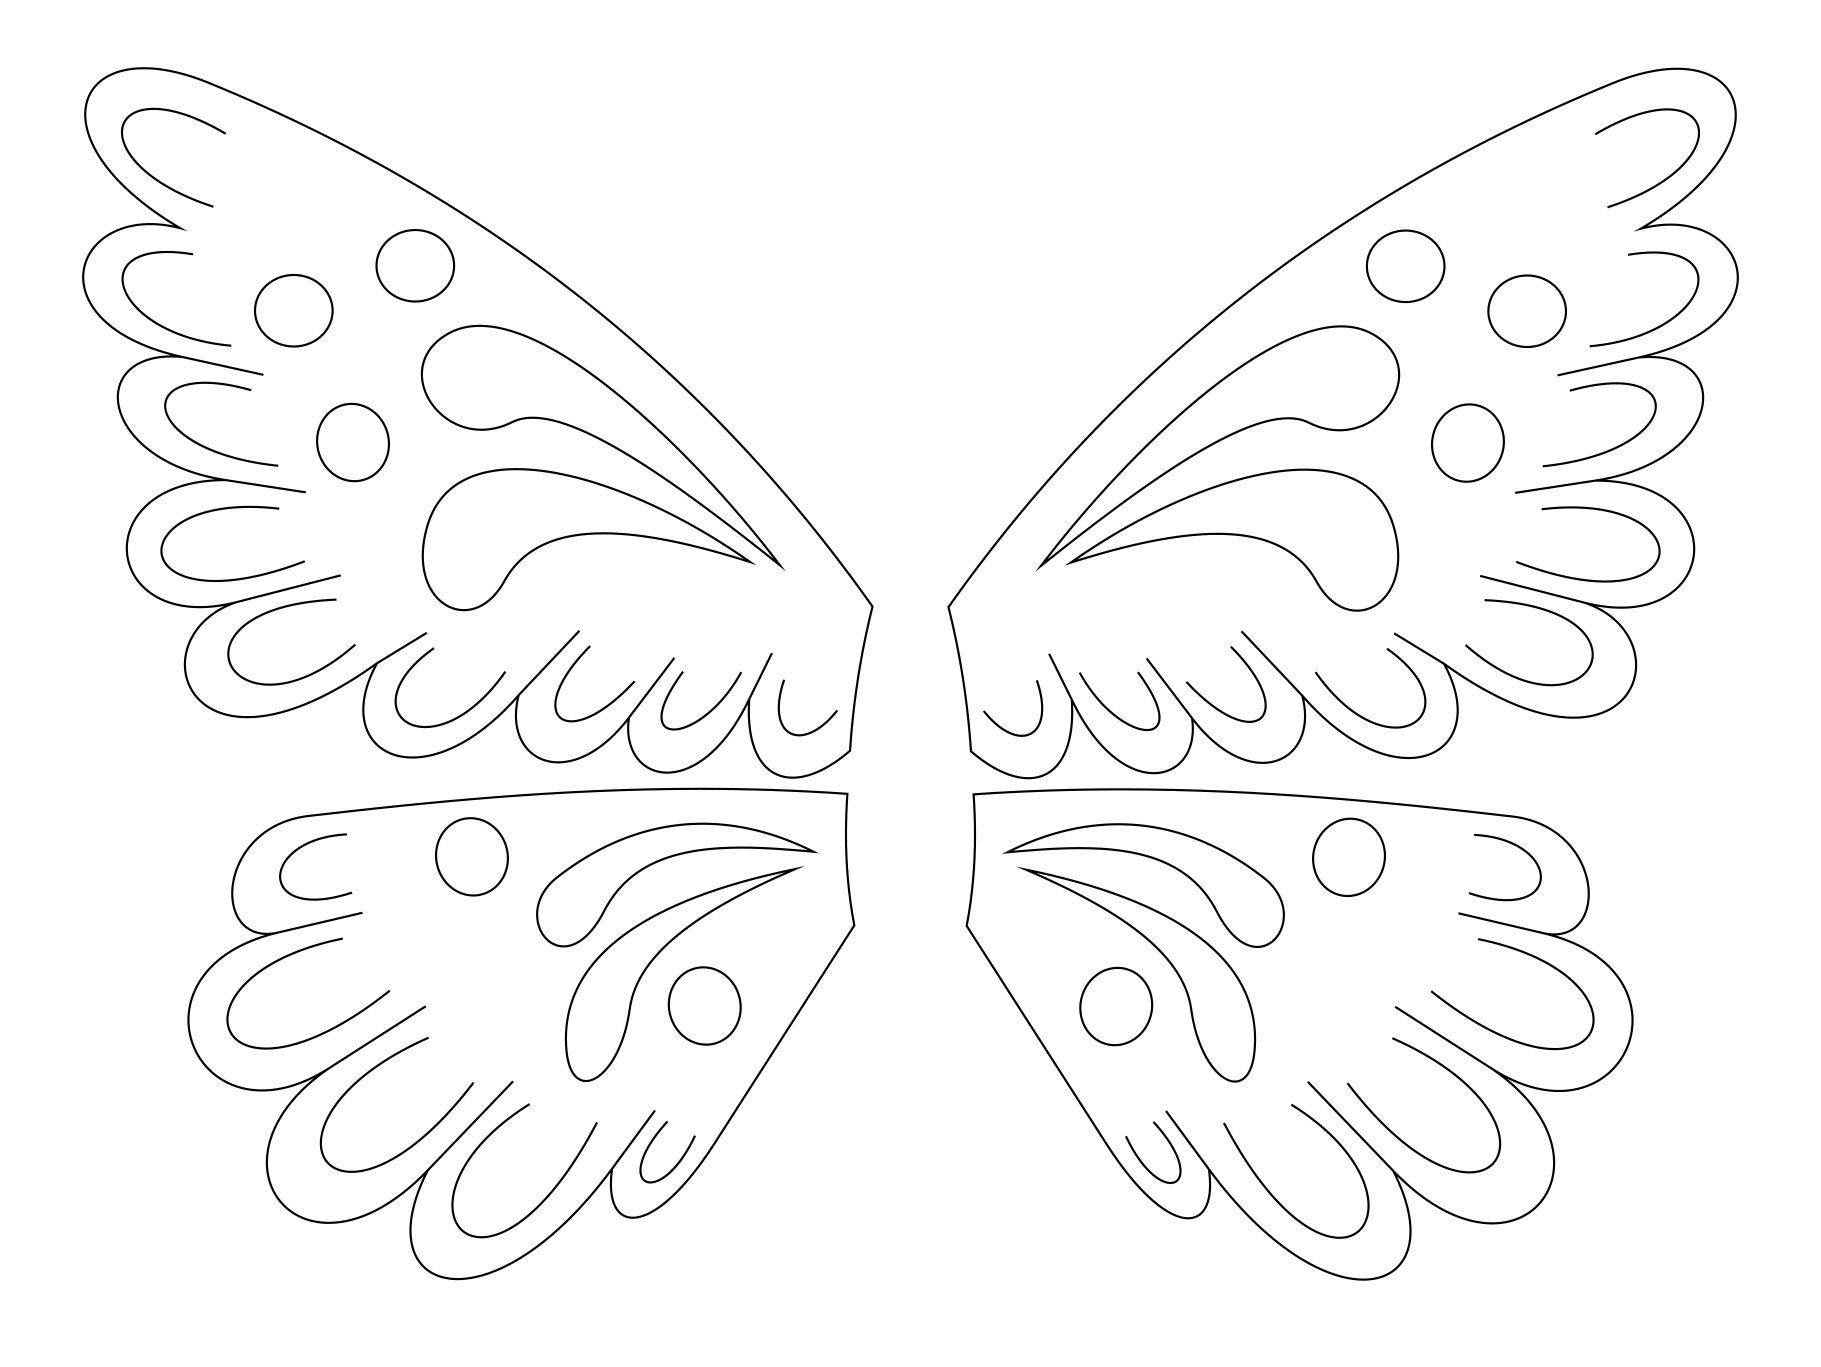 Поделка бабочка своими руками — простая инструкция для начинающих. увлекательный мастер-класс с фото и описанием